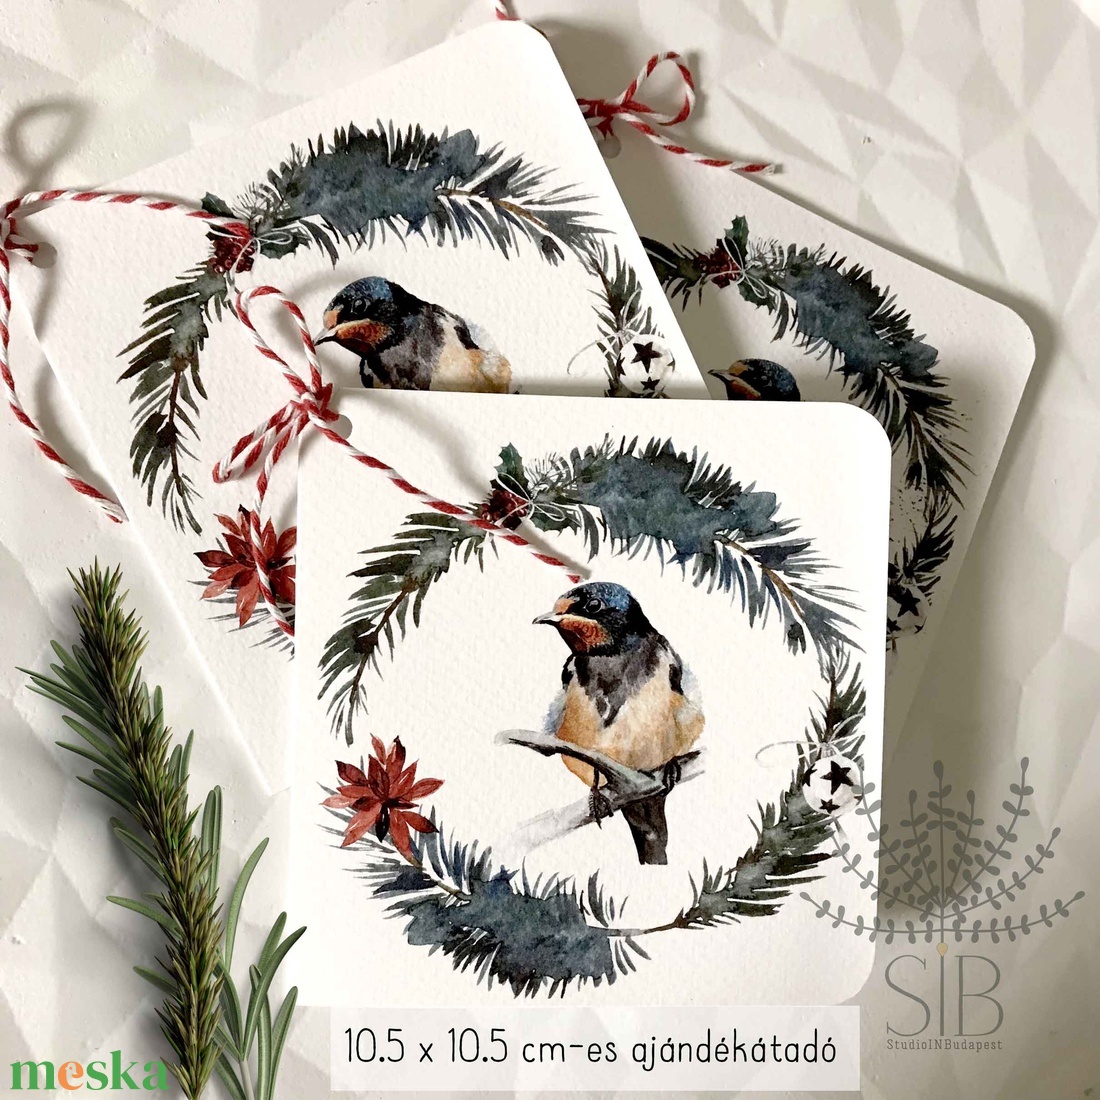 Madárka fenyő koszorúban ajándékkísérő, ajándékátadó kártya - karácsony - karácsonyi ajándékozás - karácsonyi képeslap, üdvözlőlap, ajándékkísérő - Meska.hu